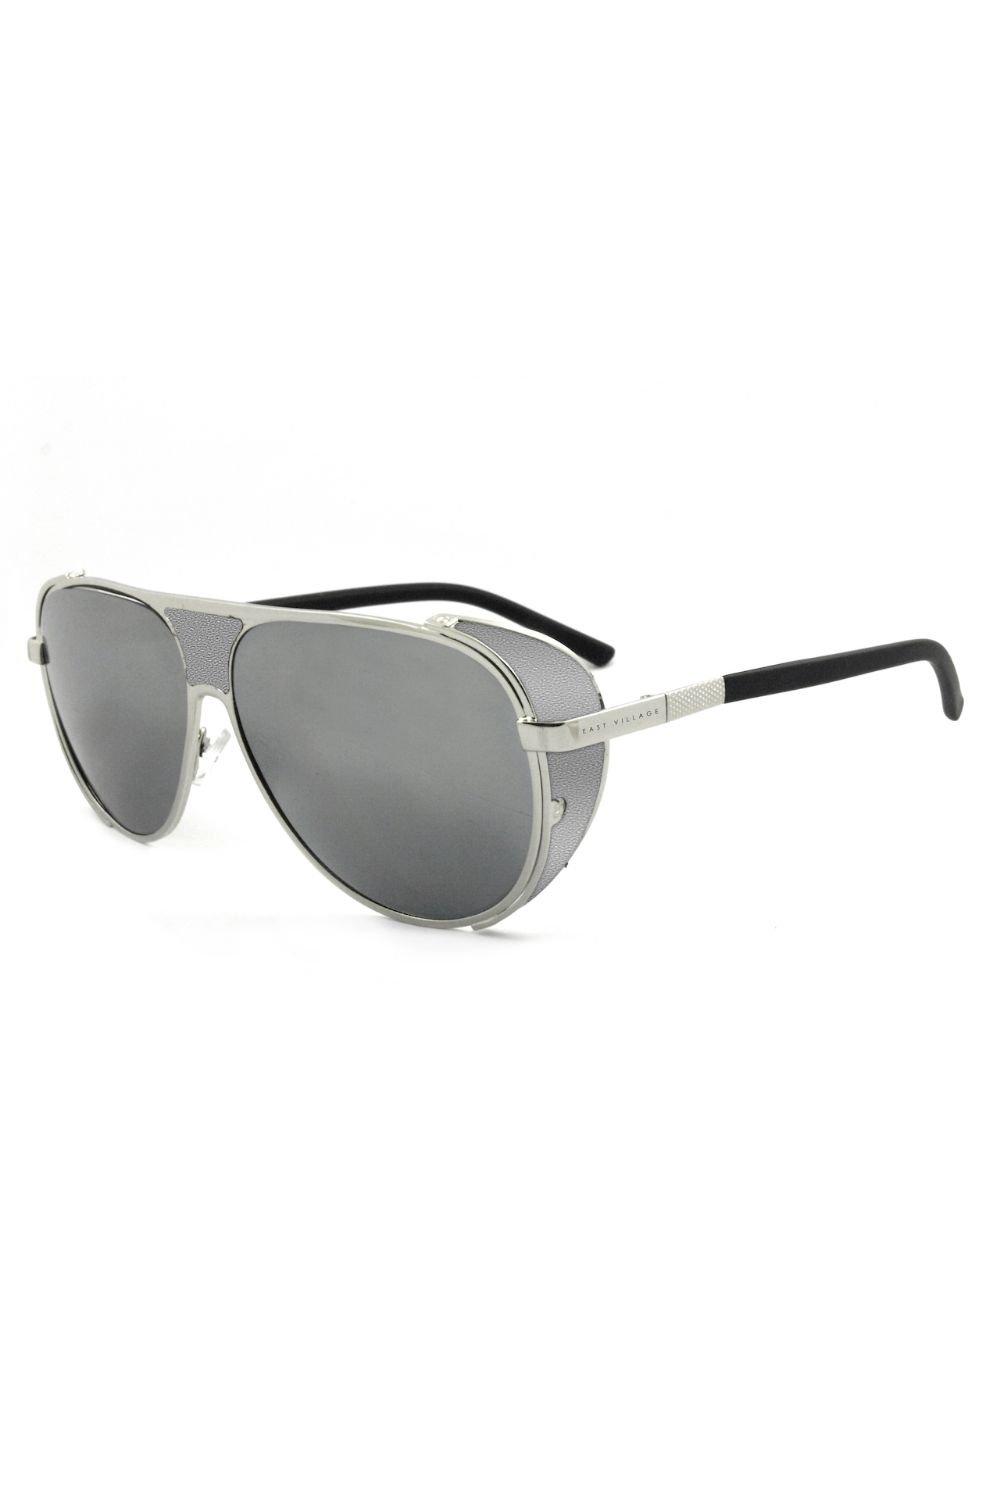 patatran village Солнцезащитные очки-авиаторы Jordan East Village, серебро